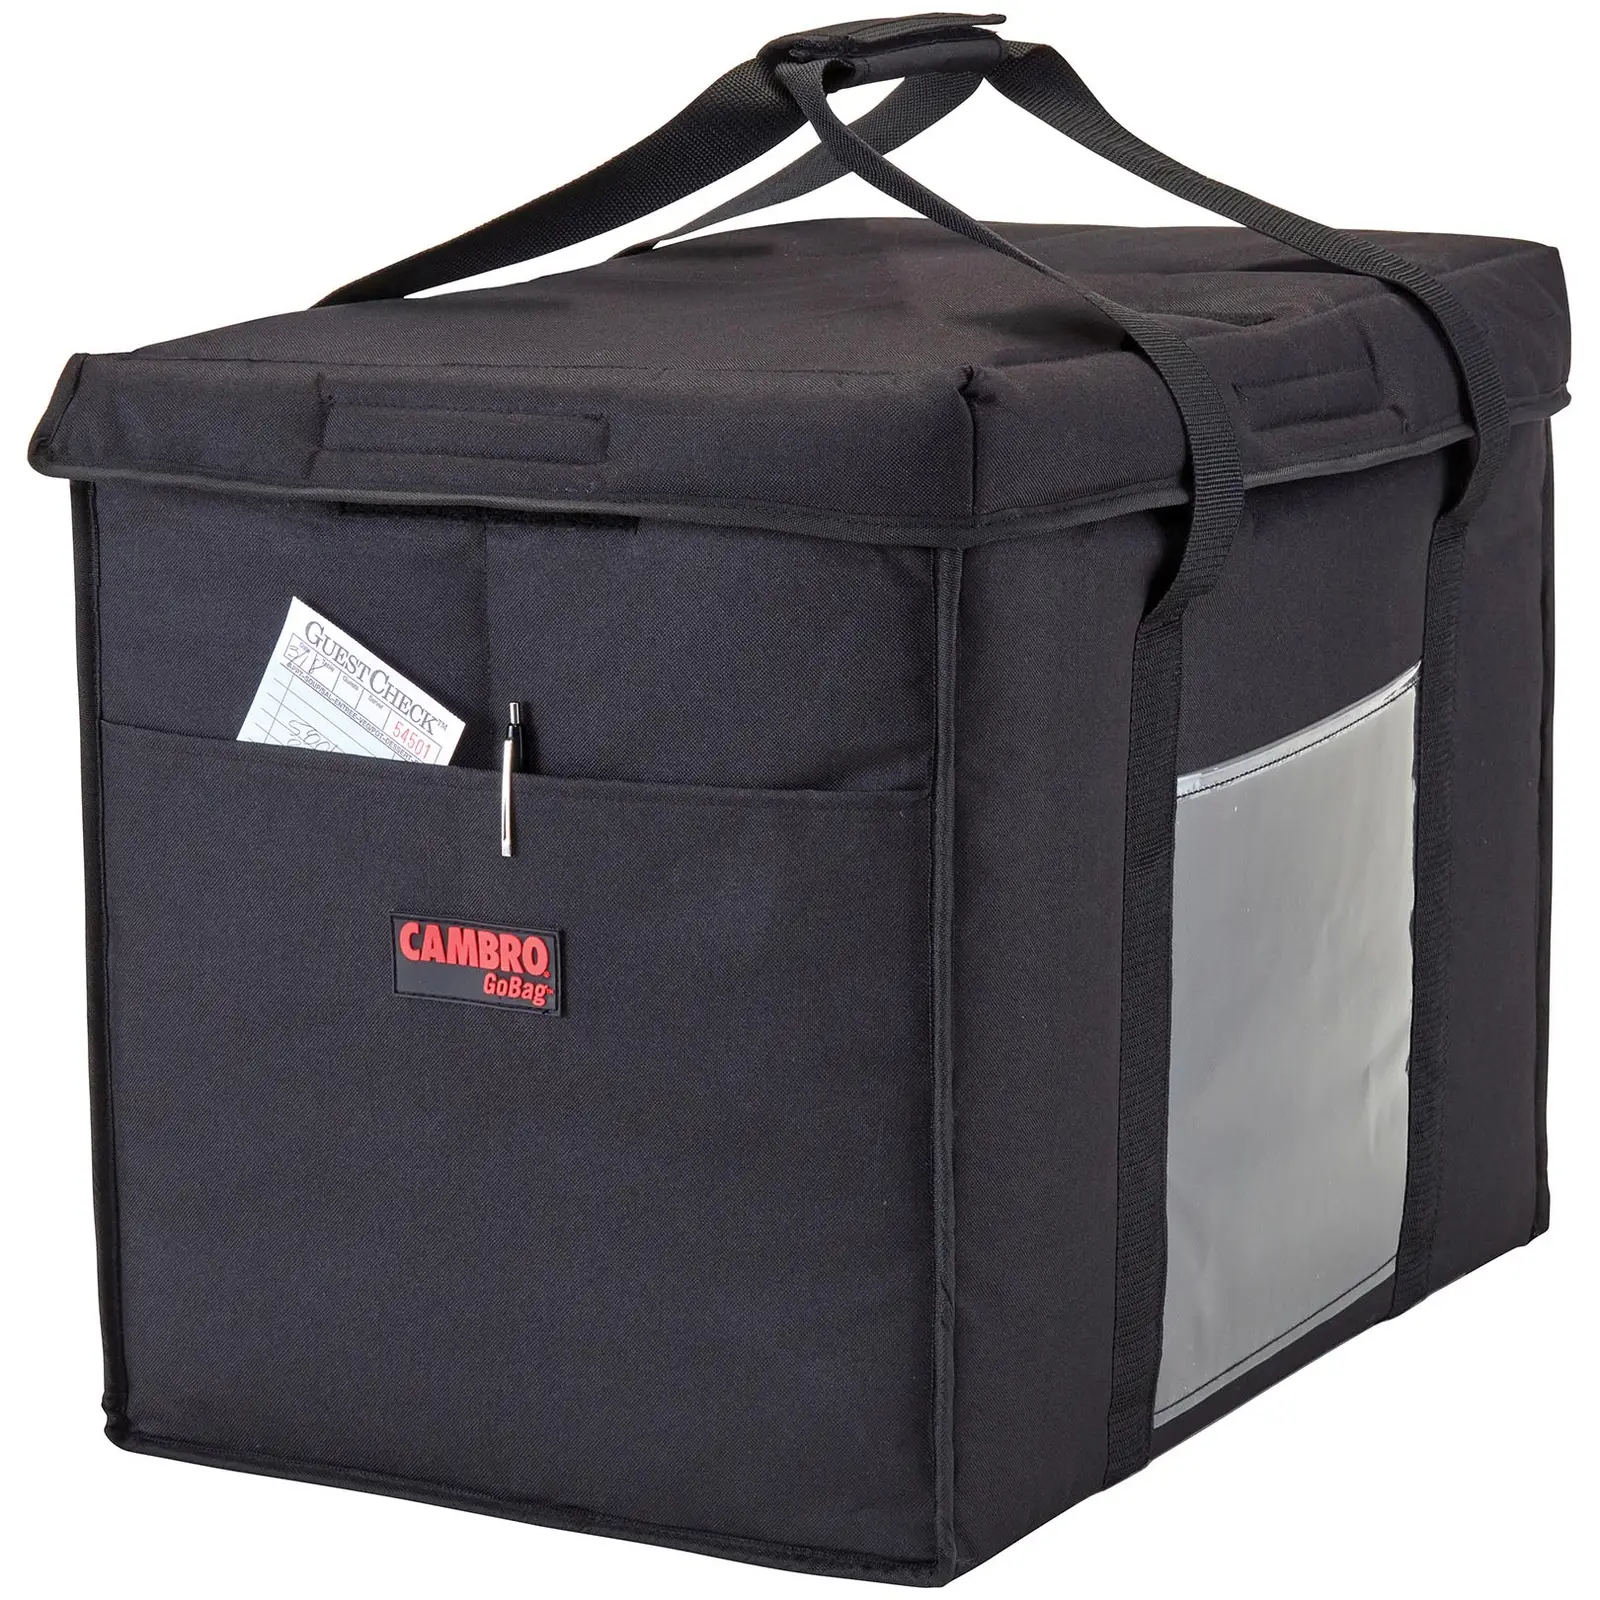 Ételszállító táska – 53.5 x 35.5 x 43 cm – Black – összehajtható